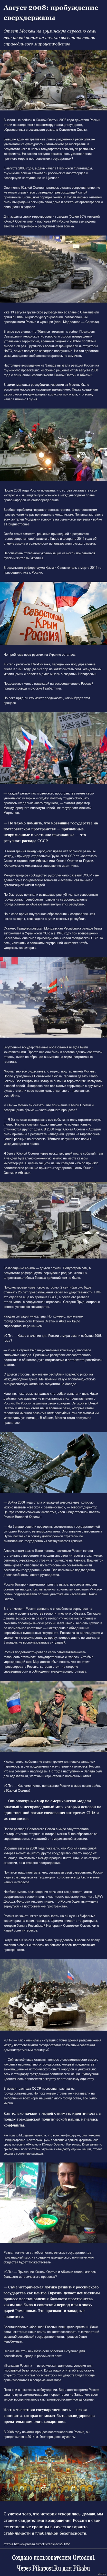  2008:                 http://svpressa.ru/politic/article/129135/